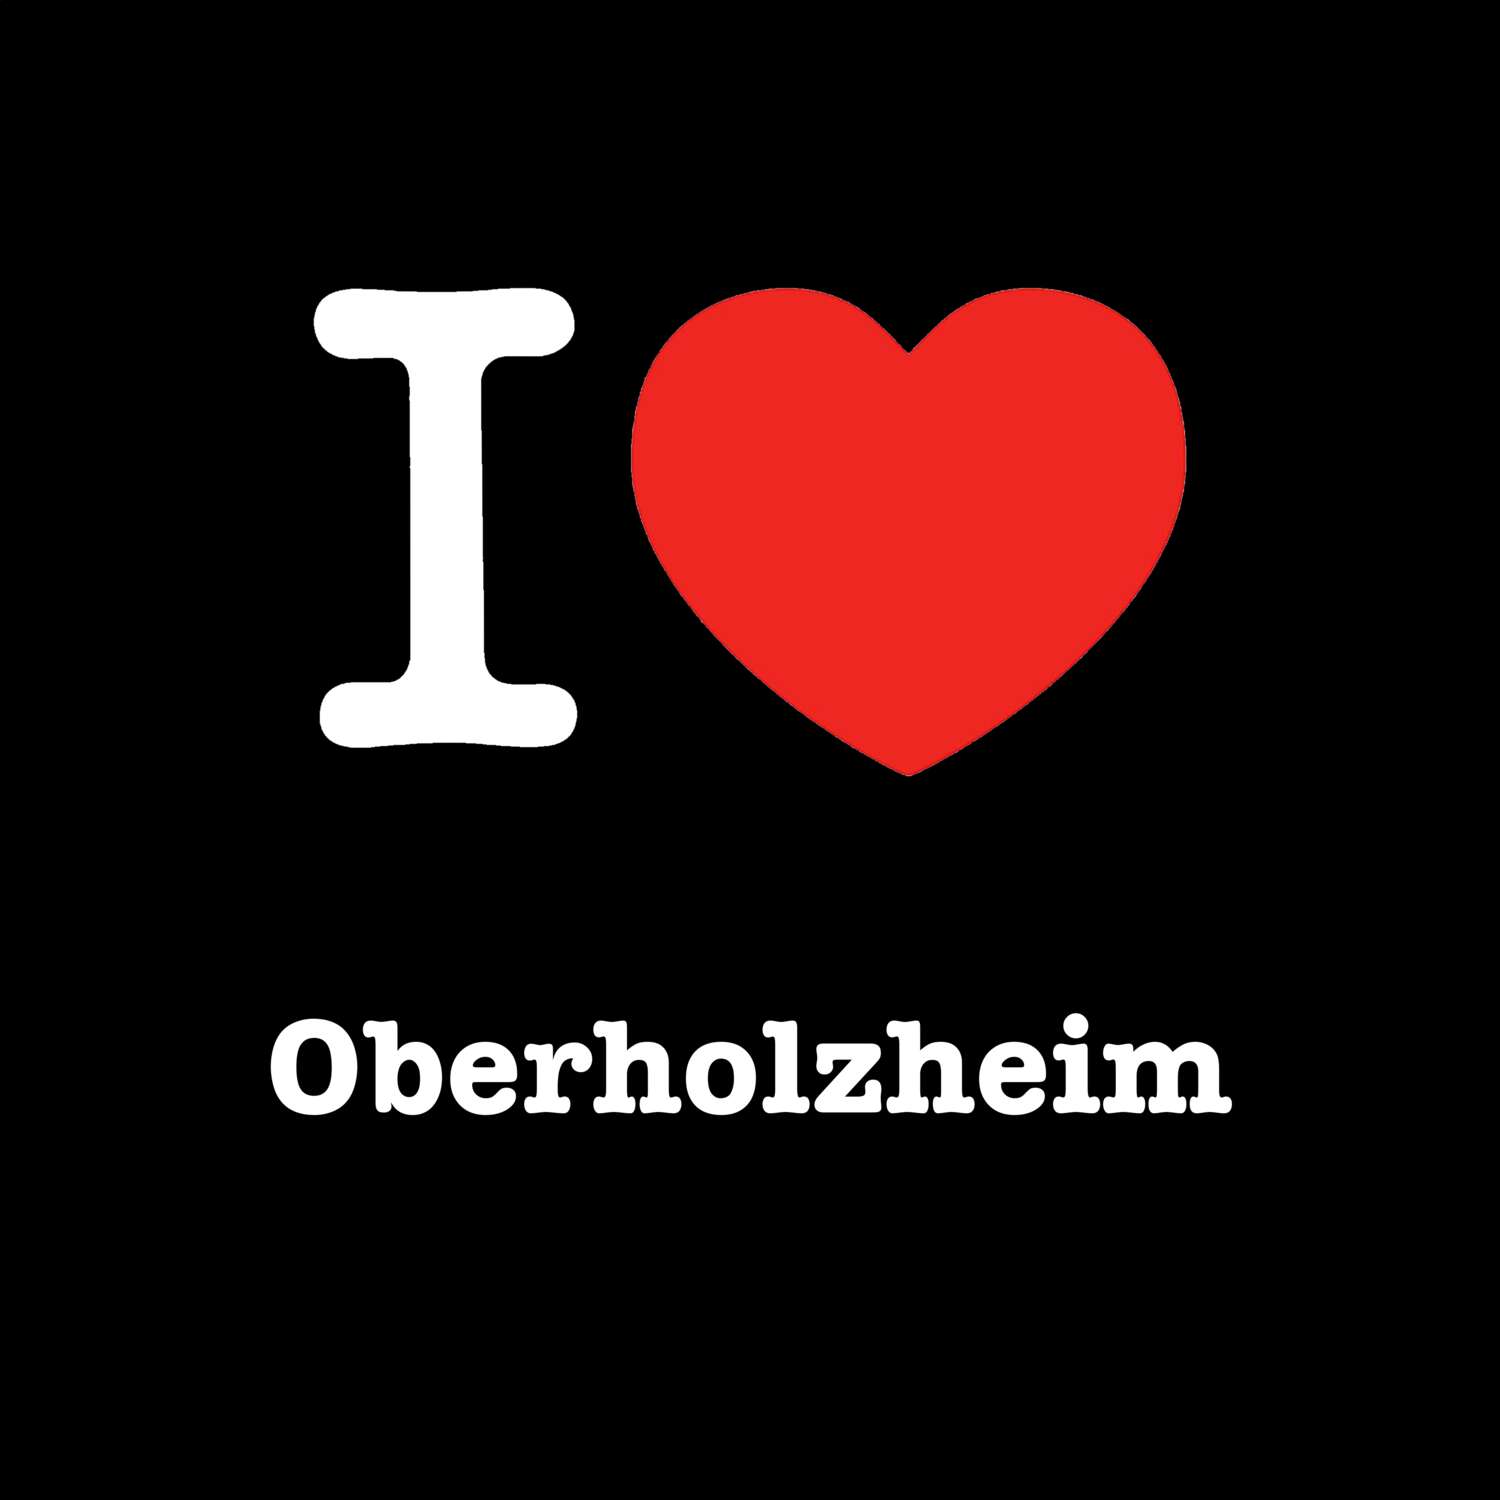 Oberholzheim T-Shirt »I love«